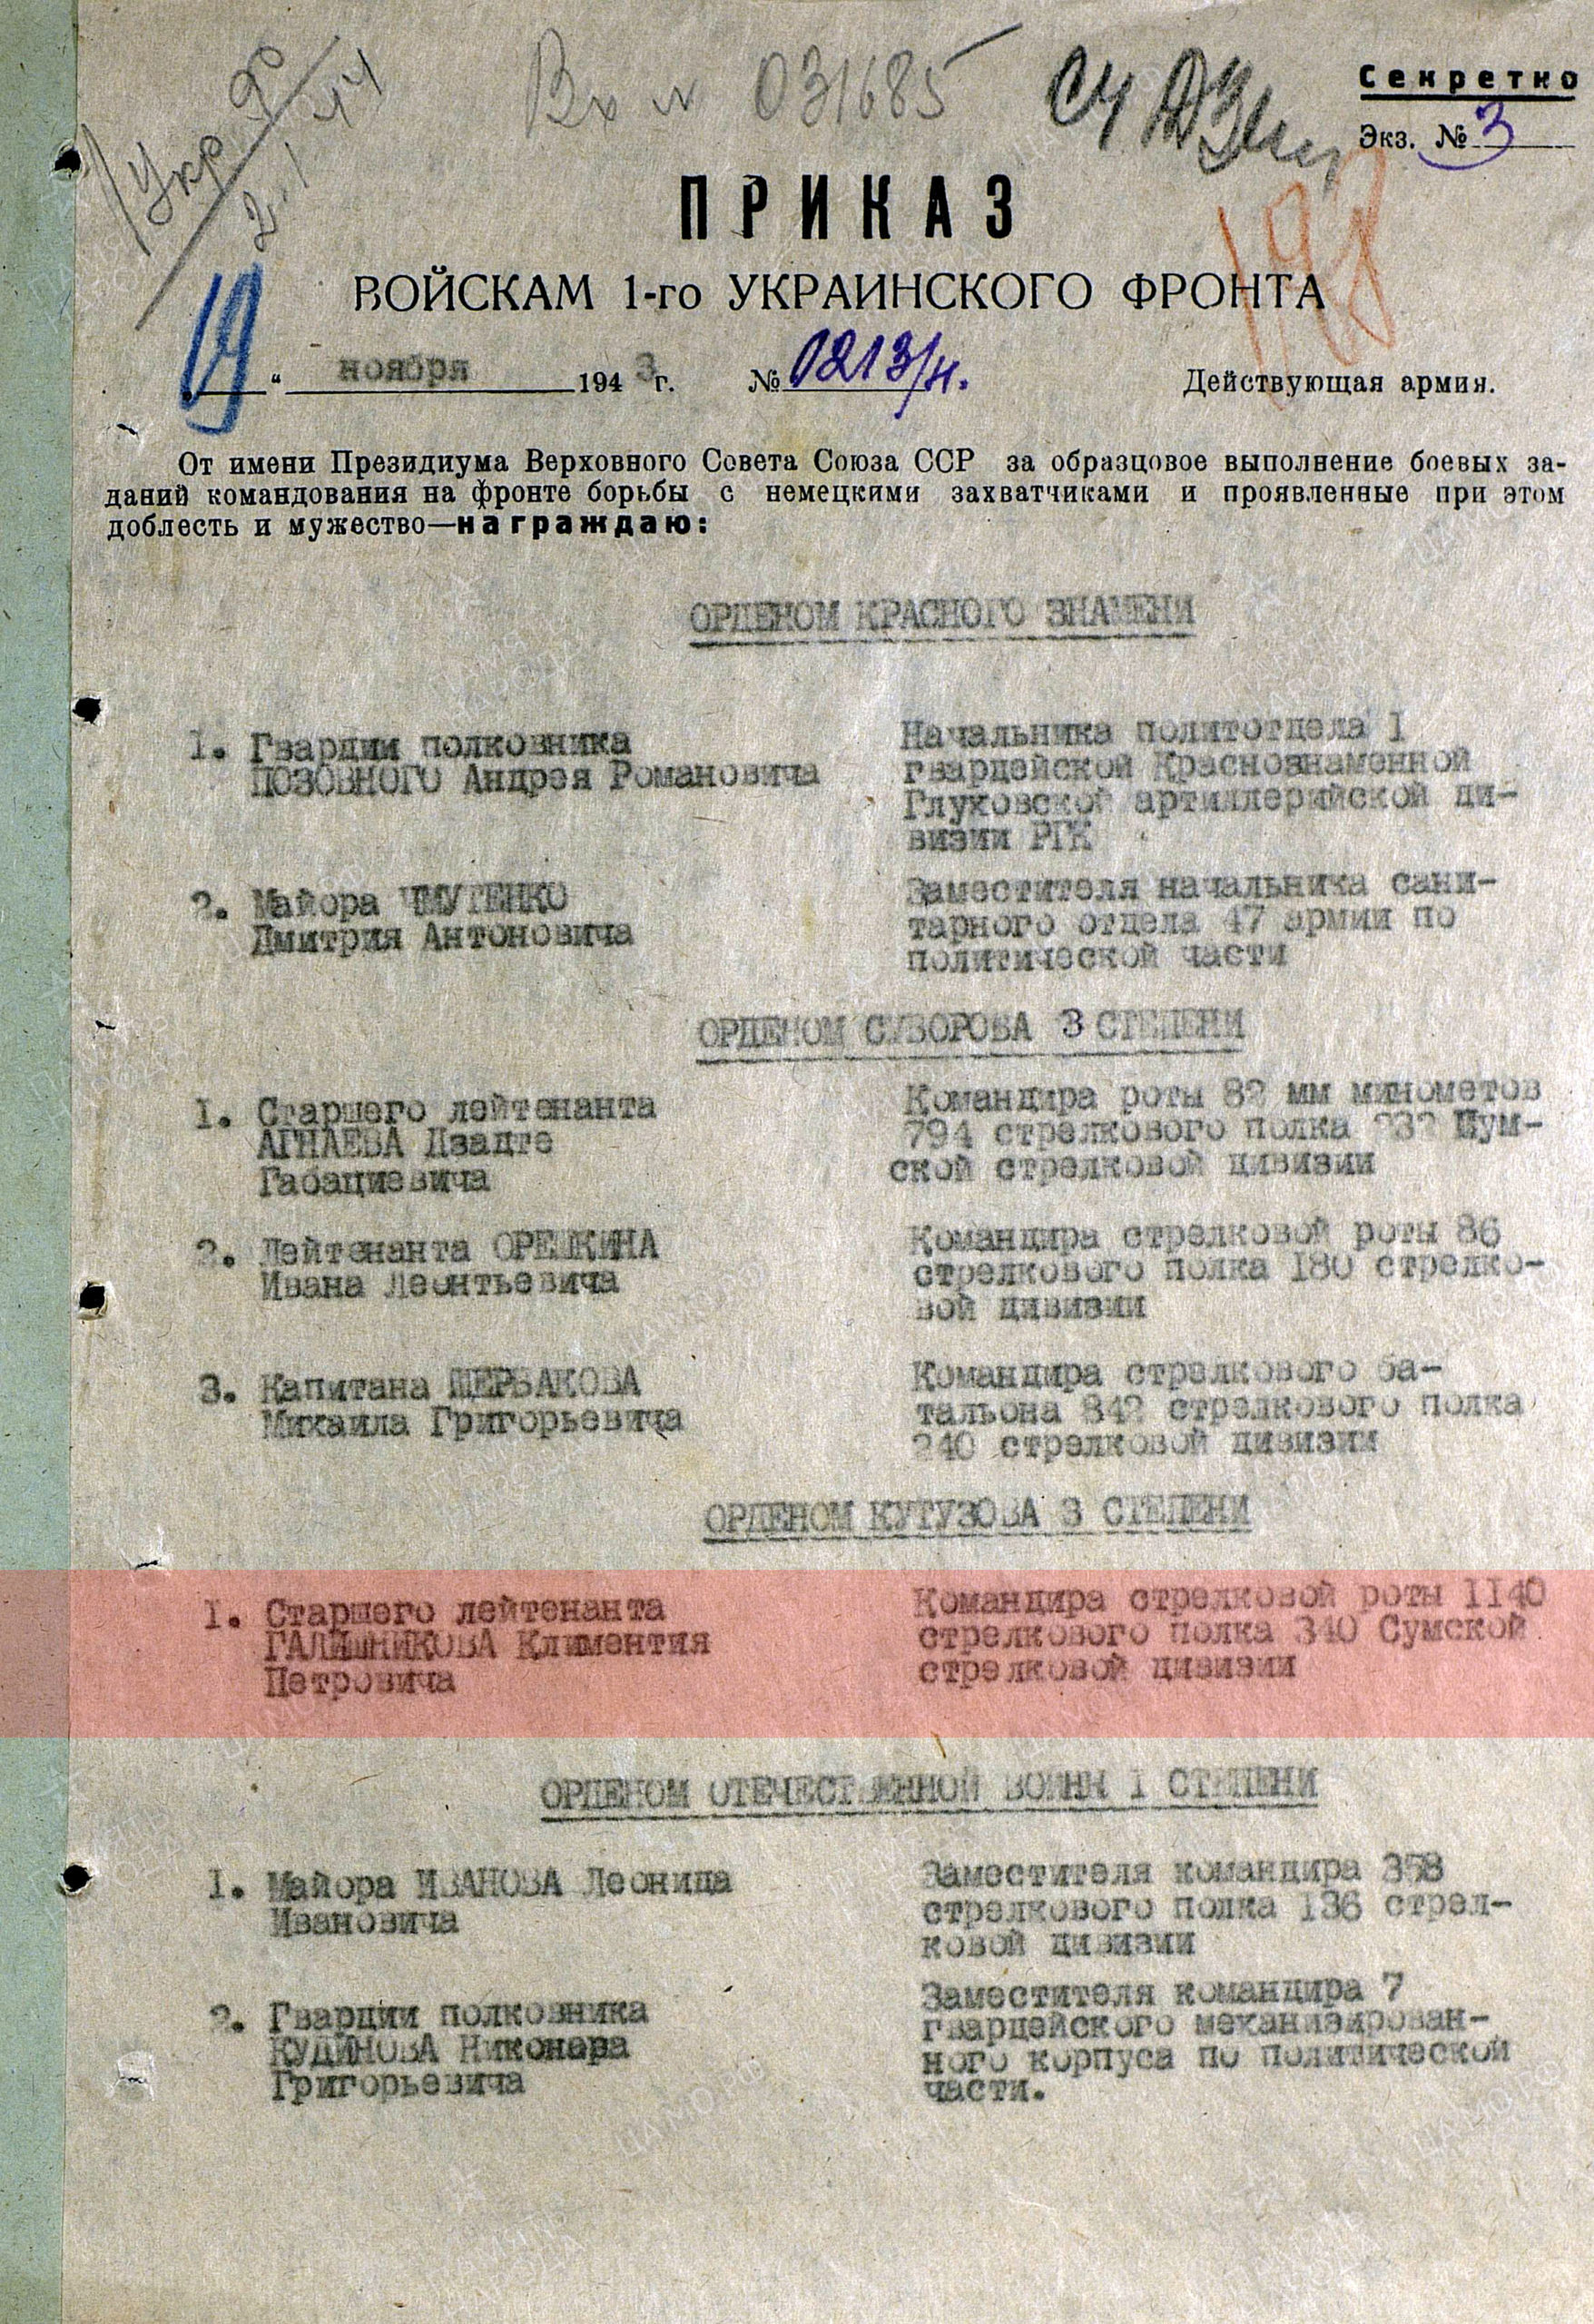 Лист приказа о награждении (строка в наградном списке). Орден Кутузова III степени